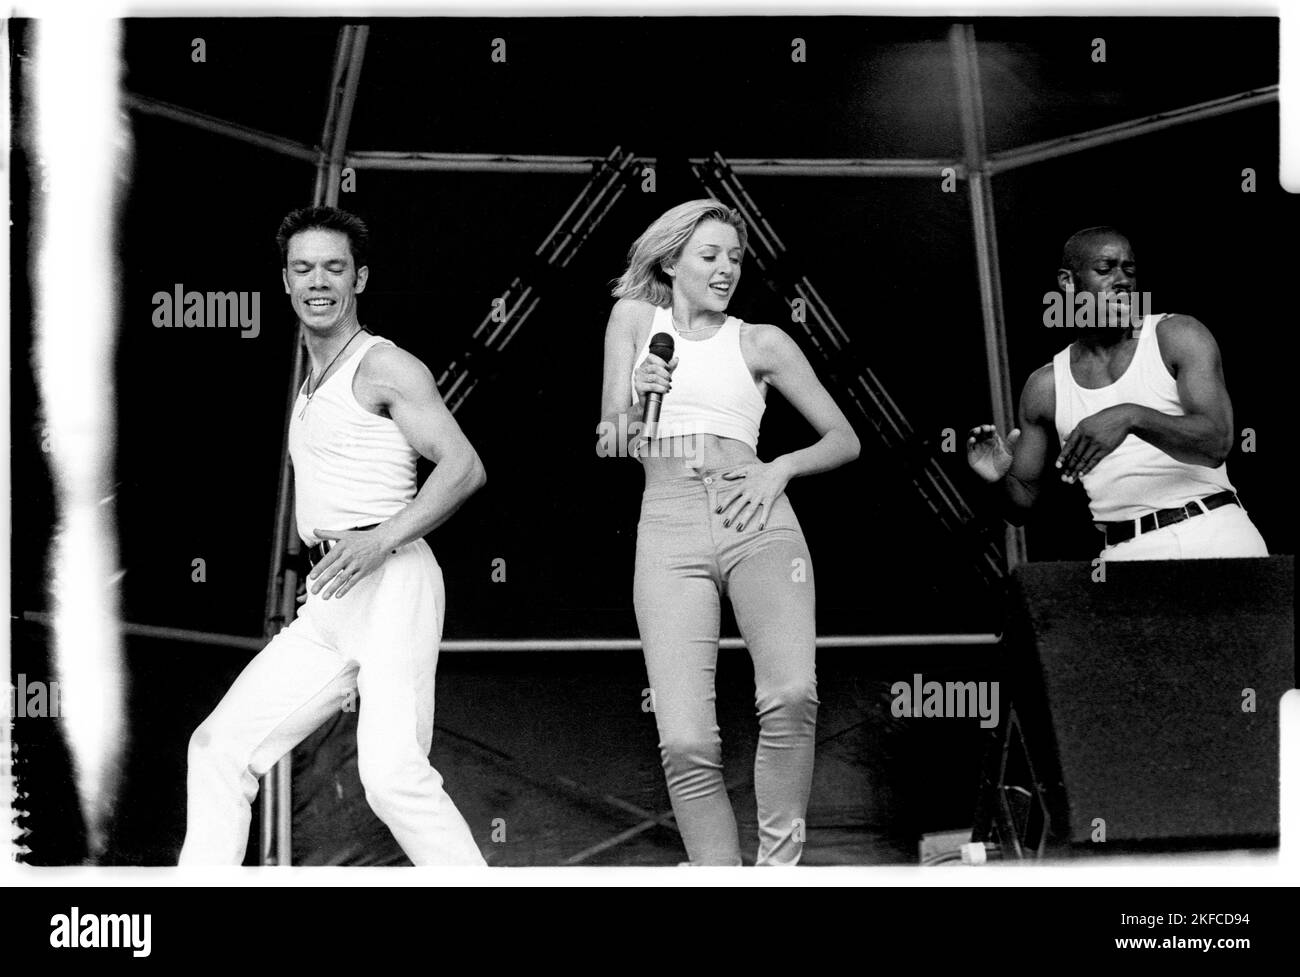 Dannii Minogue au Festival de Cardiff, pays de Galles, août 1995. Photo: ROB WATKINS Banque D'Images